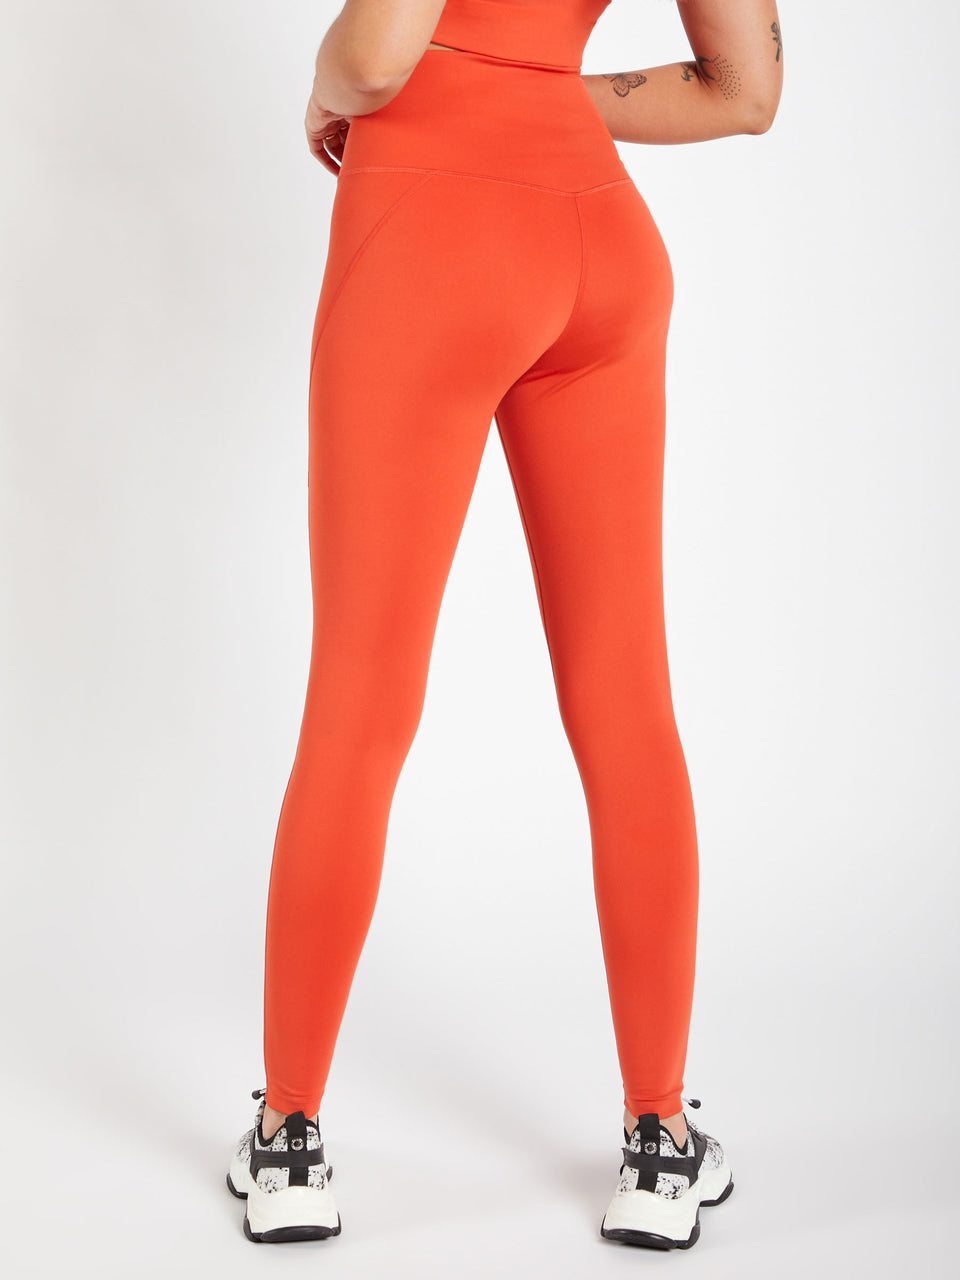 Sweetflexx leggins? : r/orangetheory